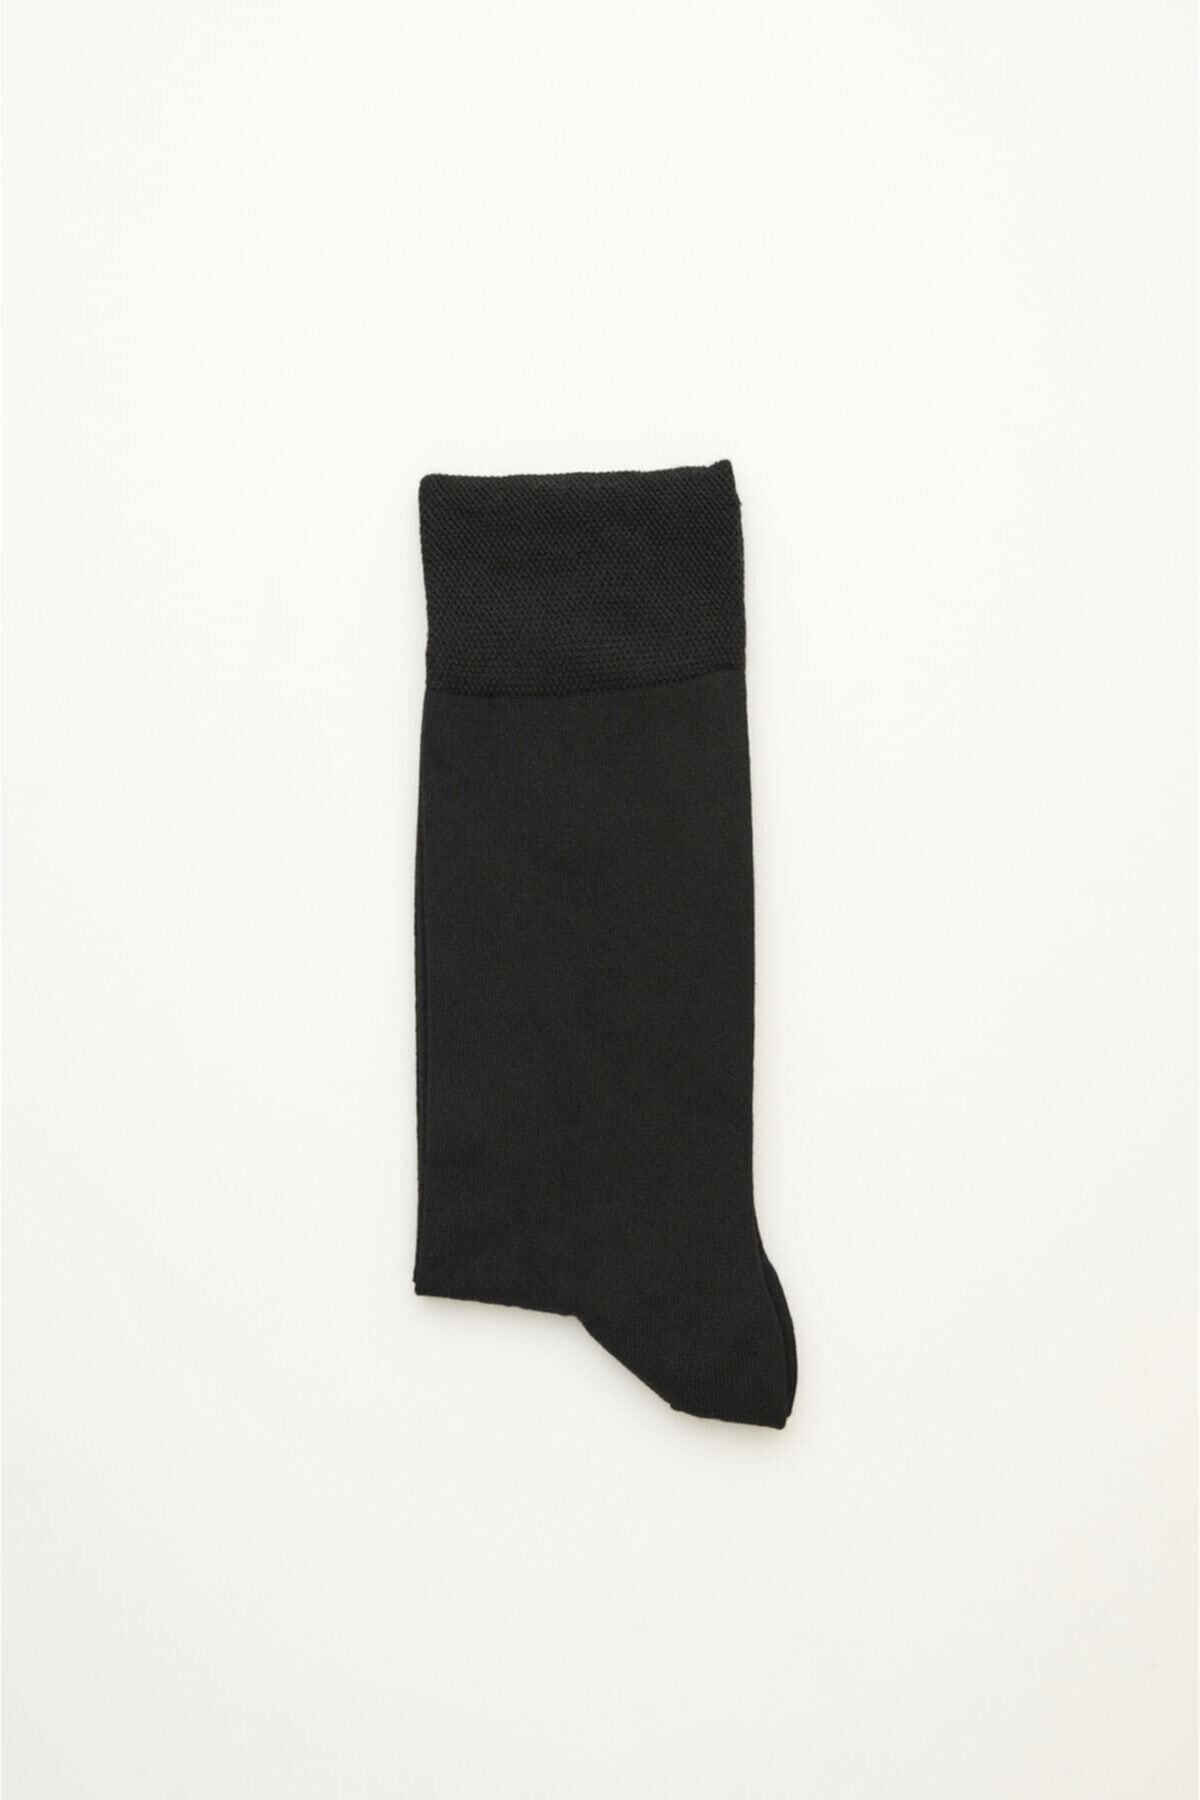 Dagi Siyah Erkek Micro Modal Çorap